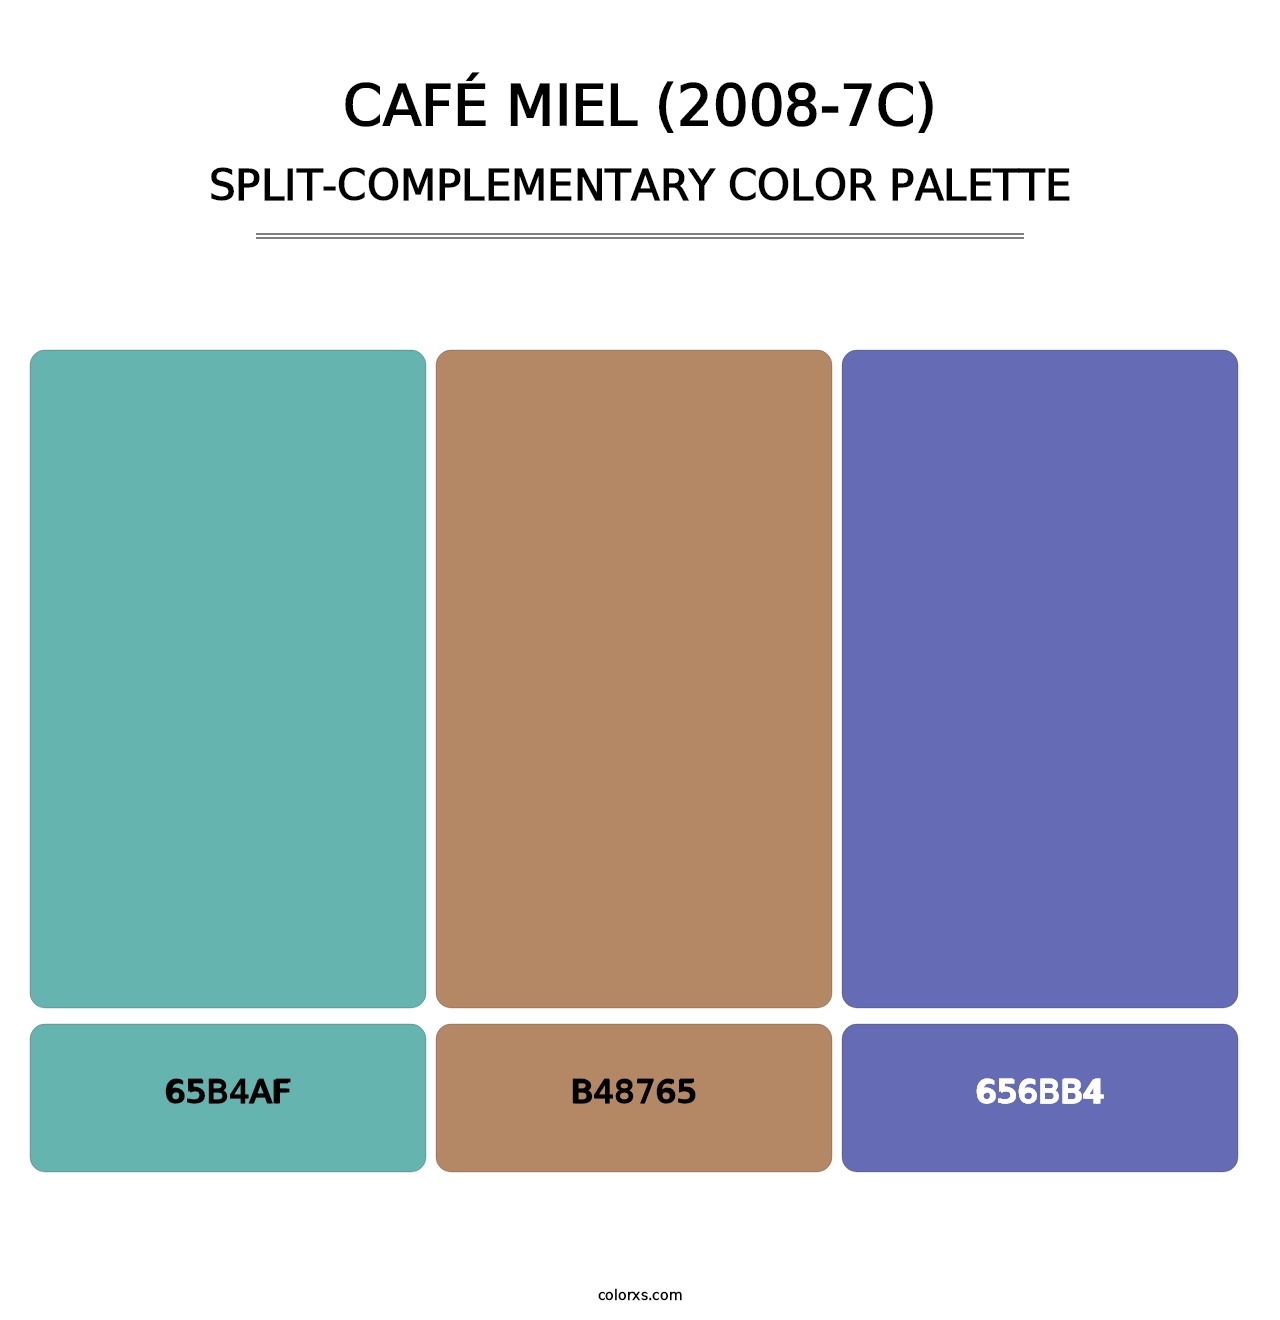 Café Miel (2008-7C) - Split-Complementary Color Palette